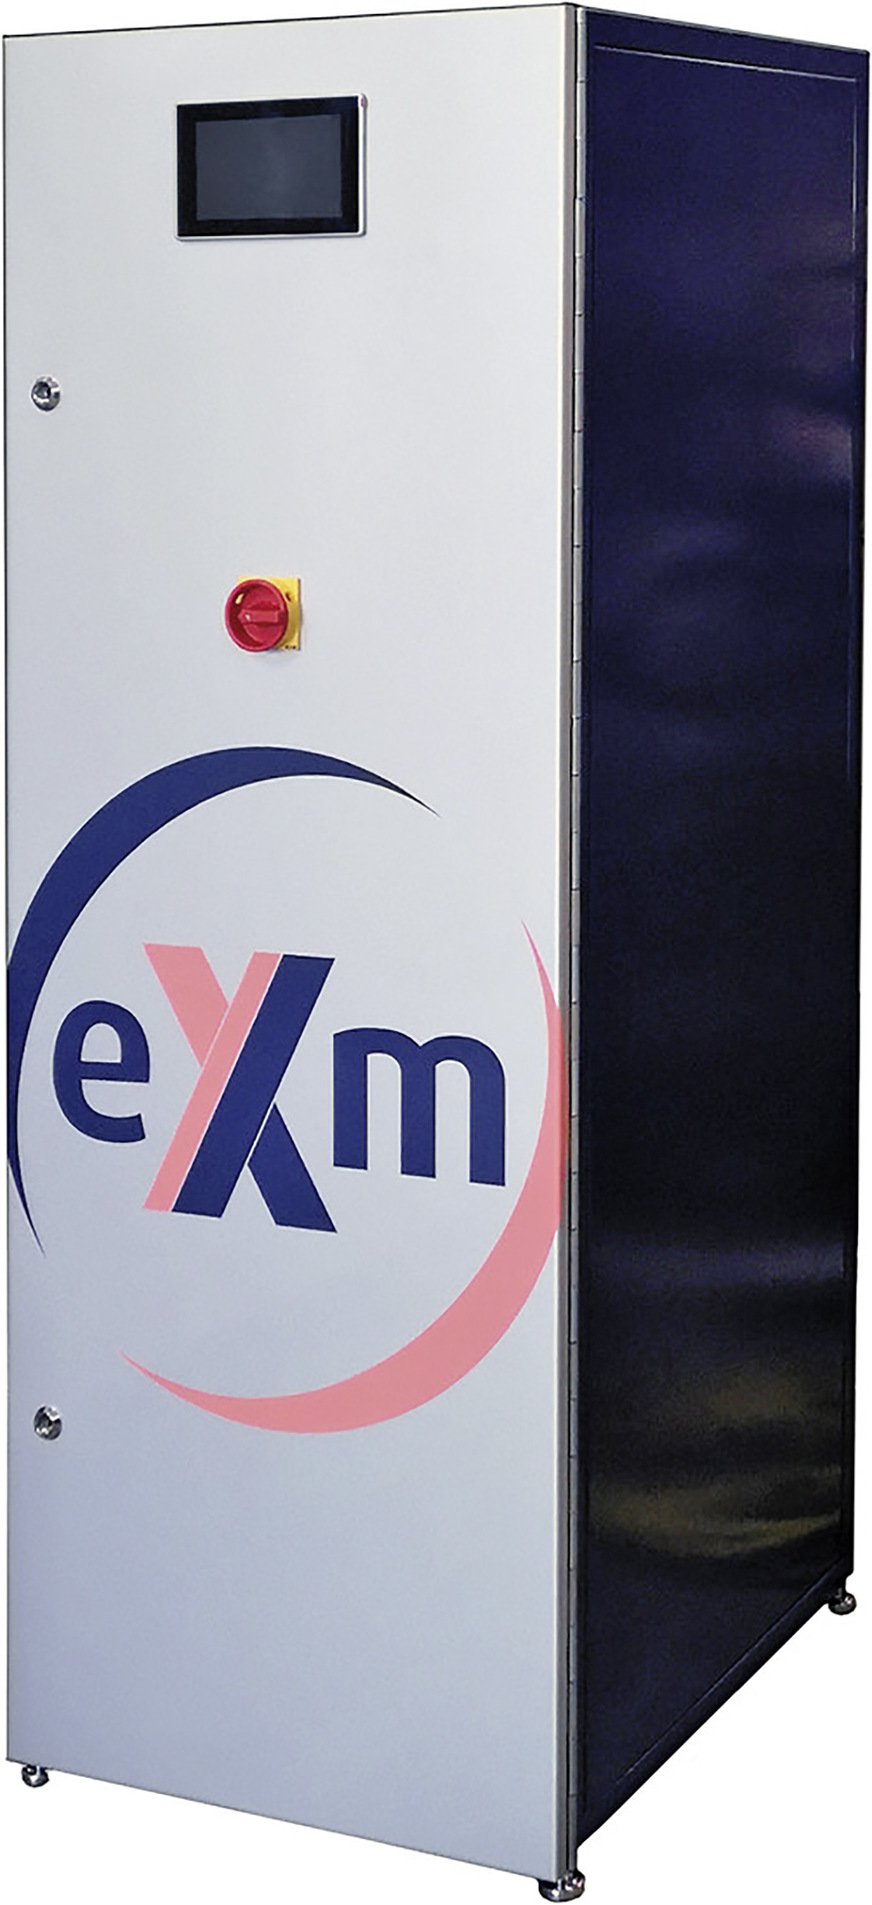 Bild 2: Unabhängig von der Leistung – max. 5 kW bis 40 kW – findet die eXergiemaschine inklusive der Regelungstechnik in einem Gehäuse Platz, das etwa die Abmessungen eines hohen Kühlschranks hat.